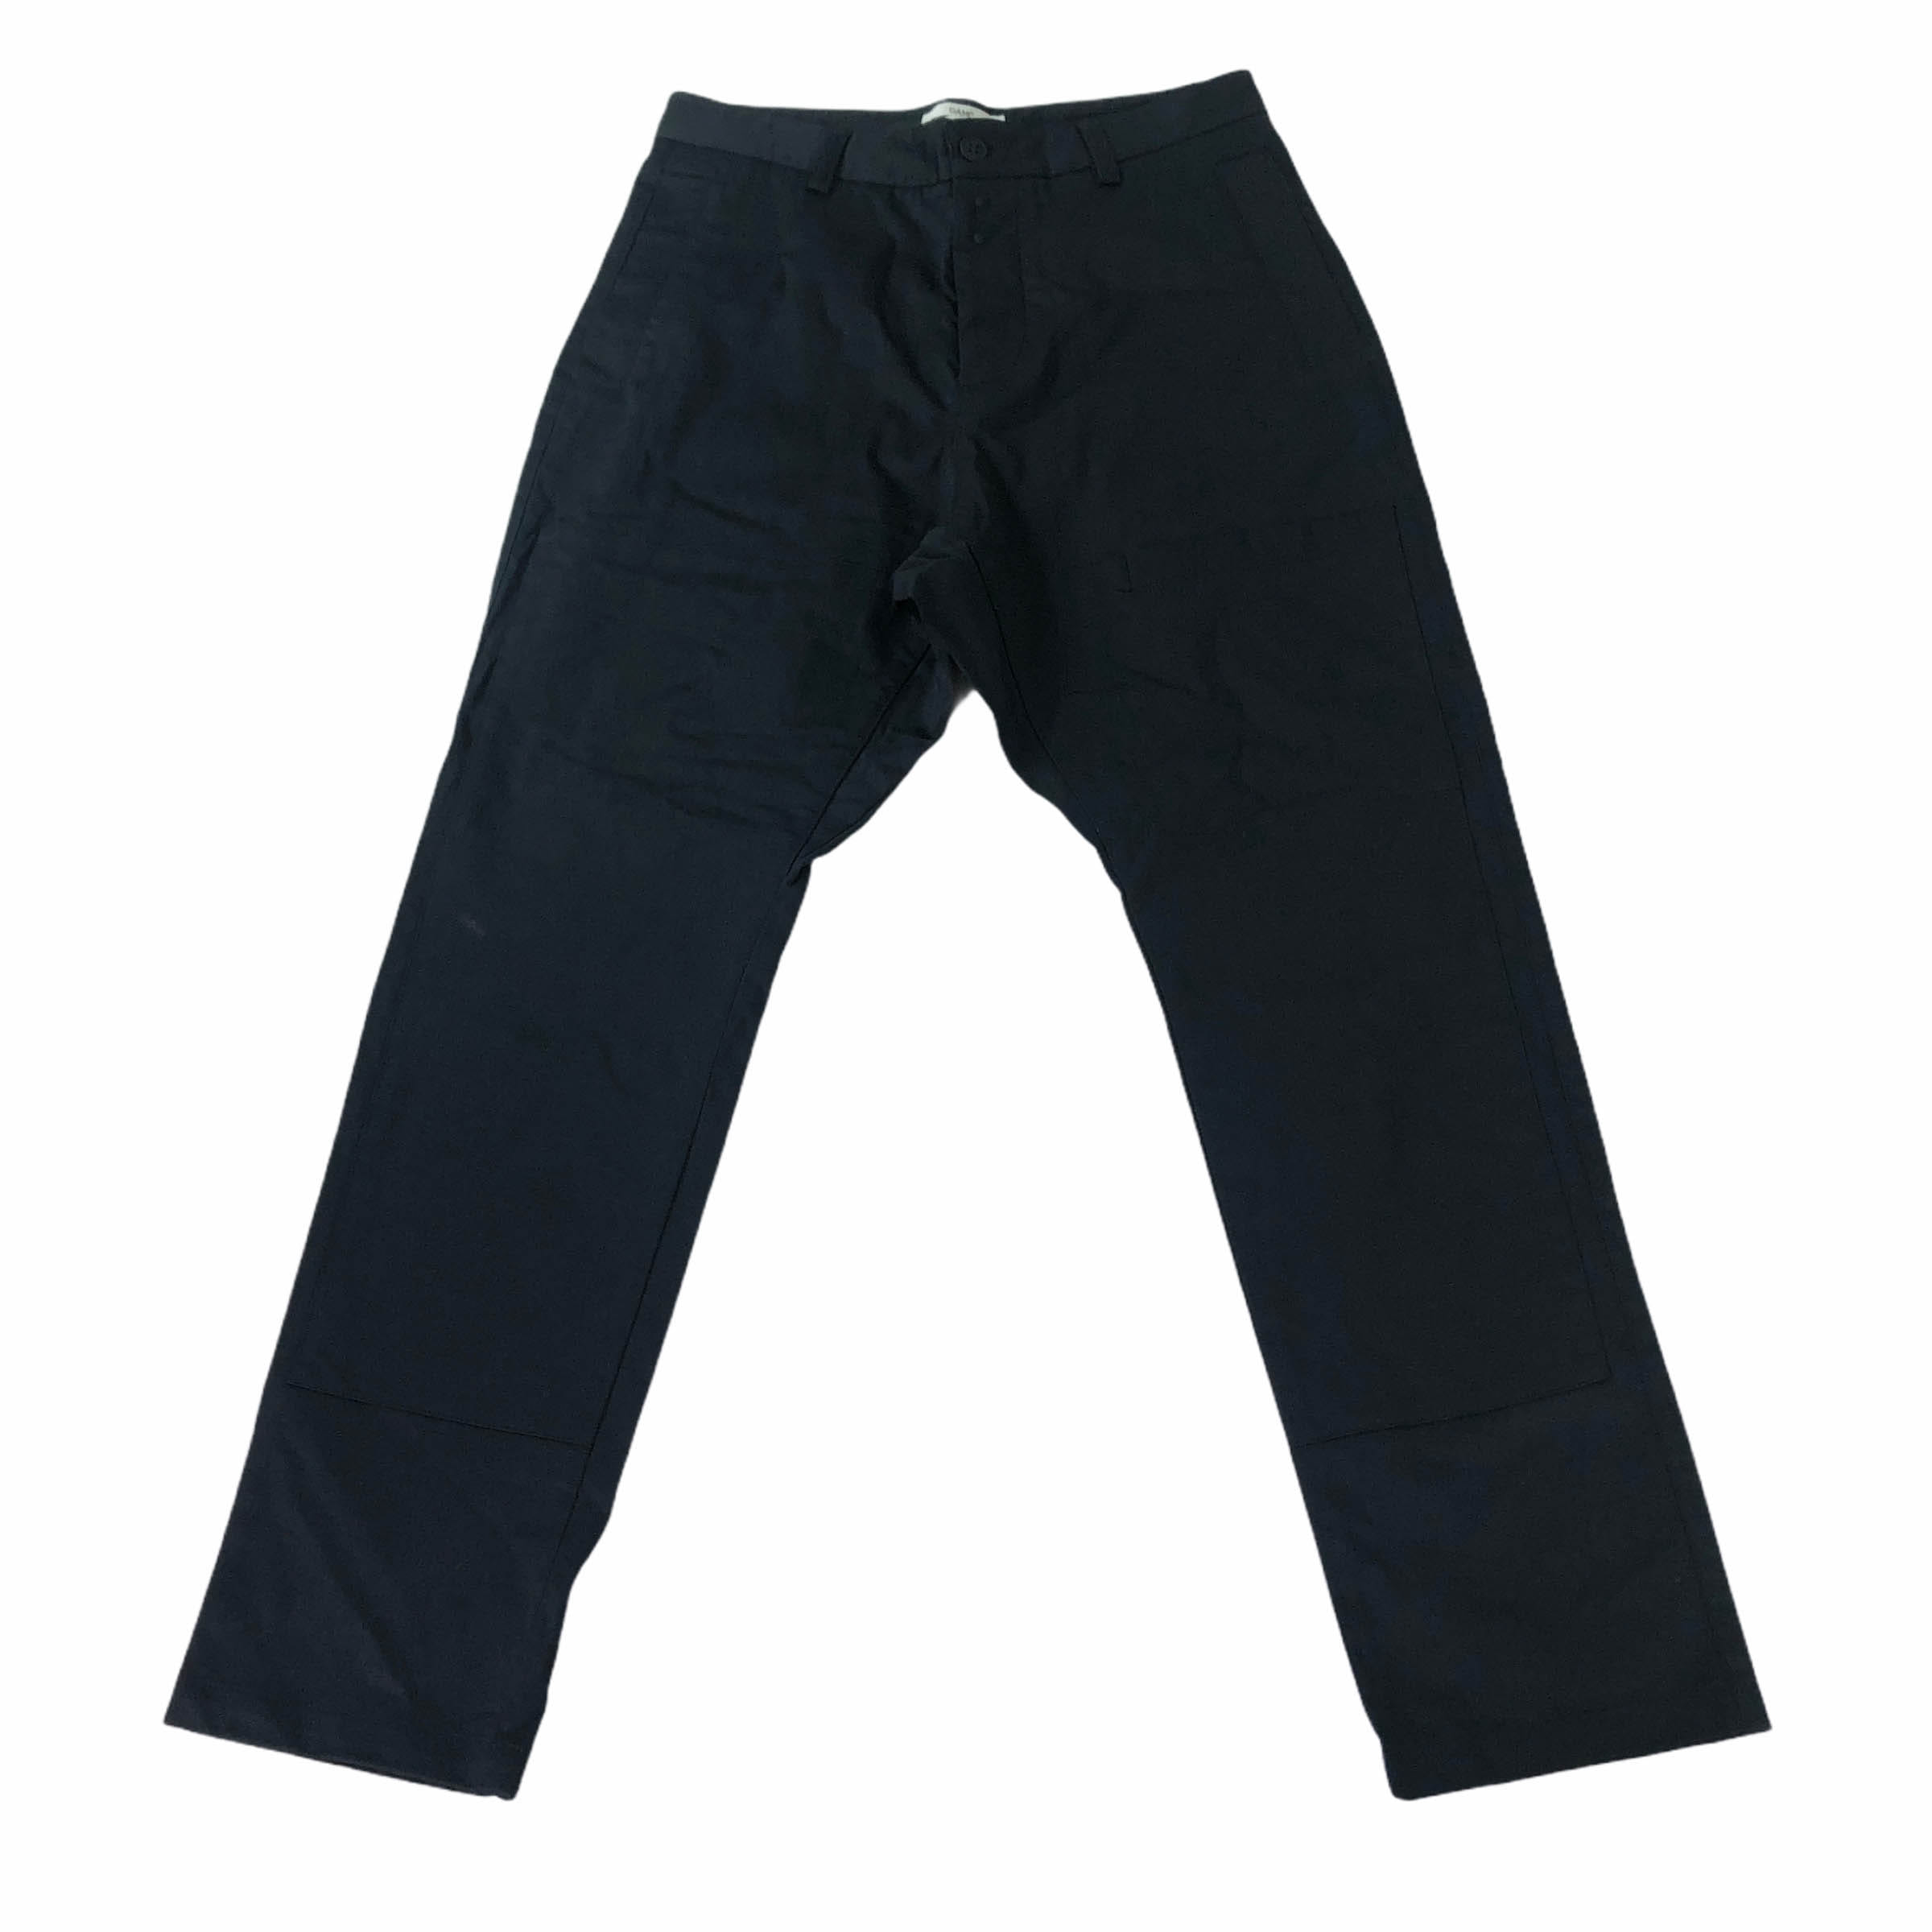 [OAMC] Dark Navy Cotton Pants - Size 30